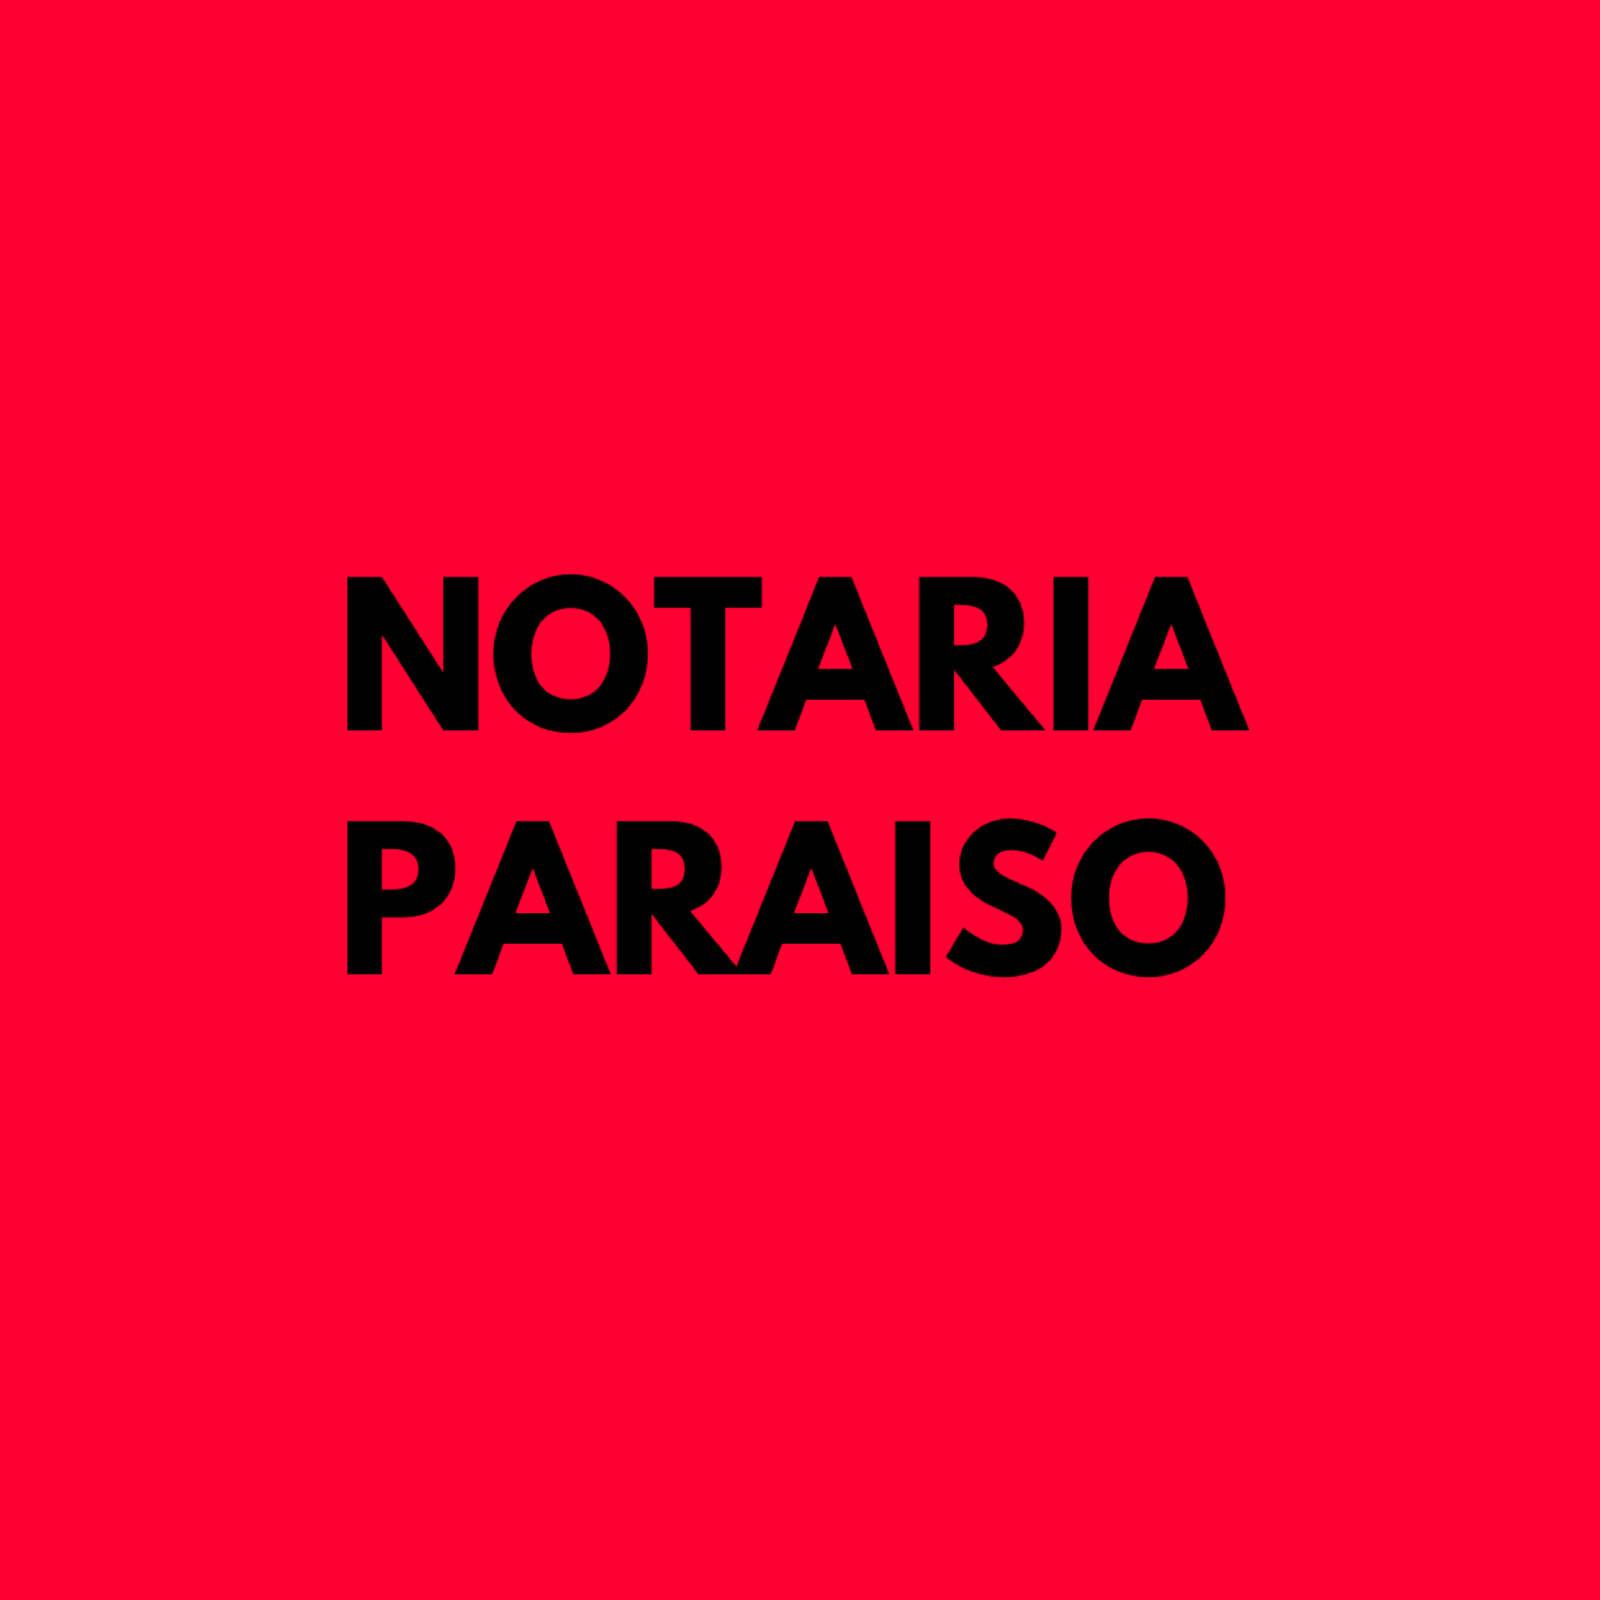 Notarios en Zaragoza